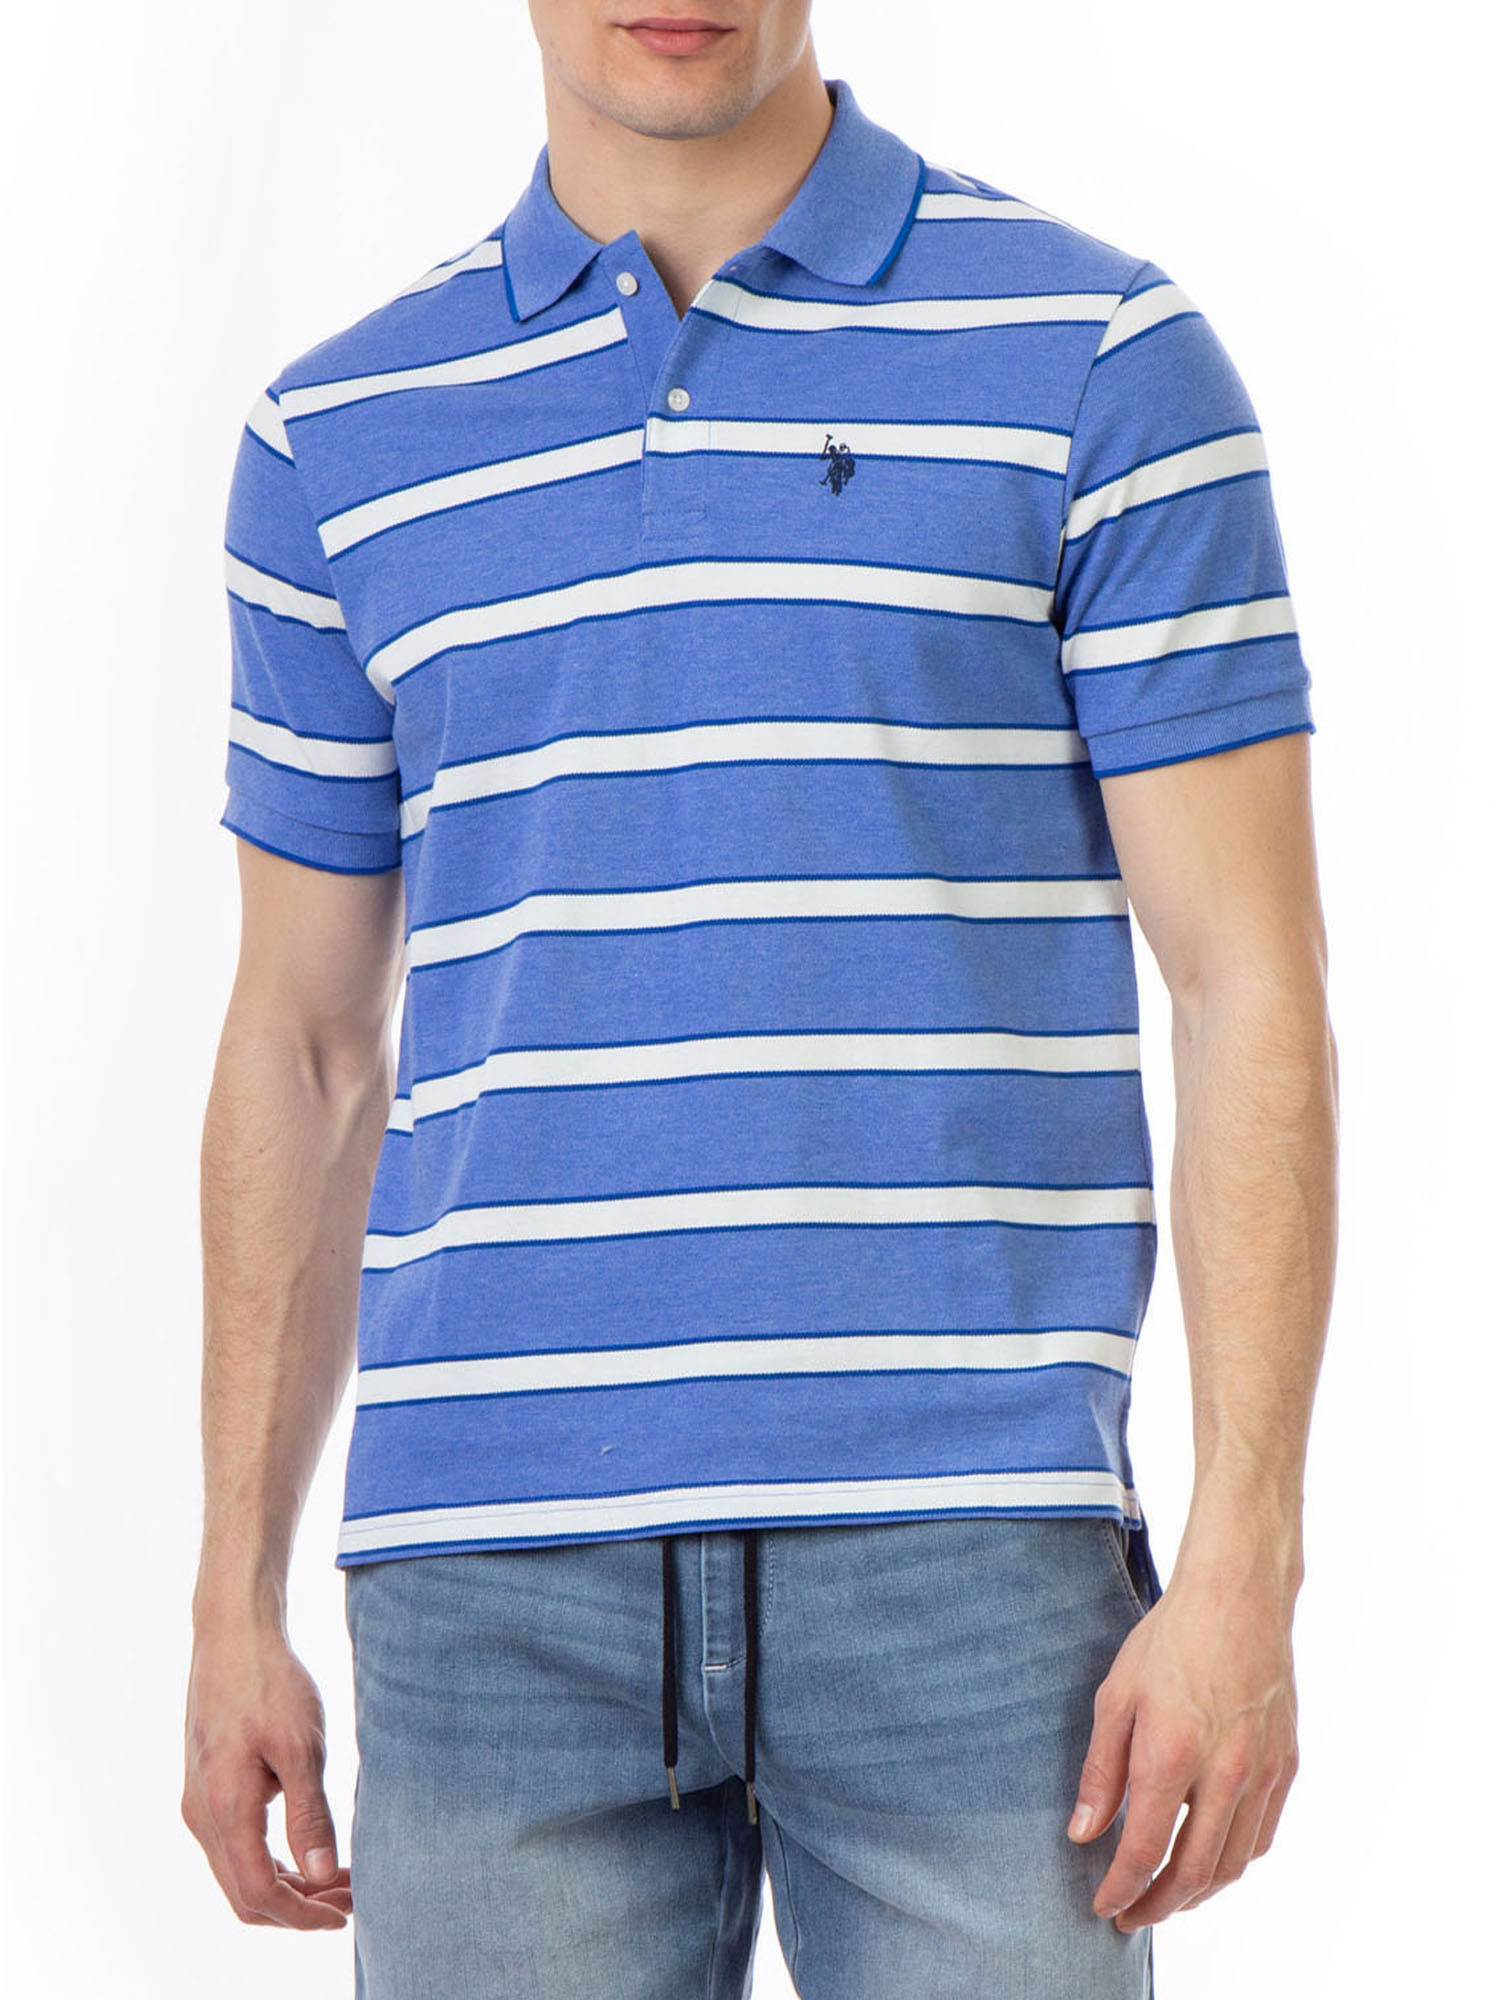 U.S. Polo Assn. Men's Striped Pique Polo Shirt - image 1 of 5